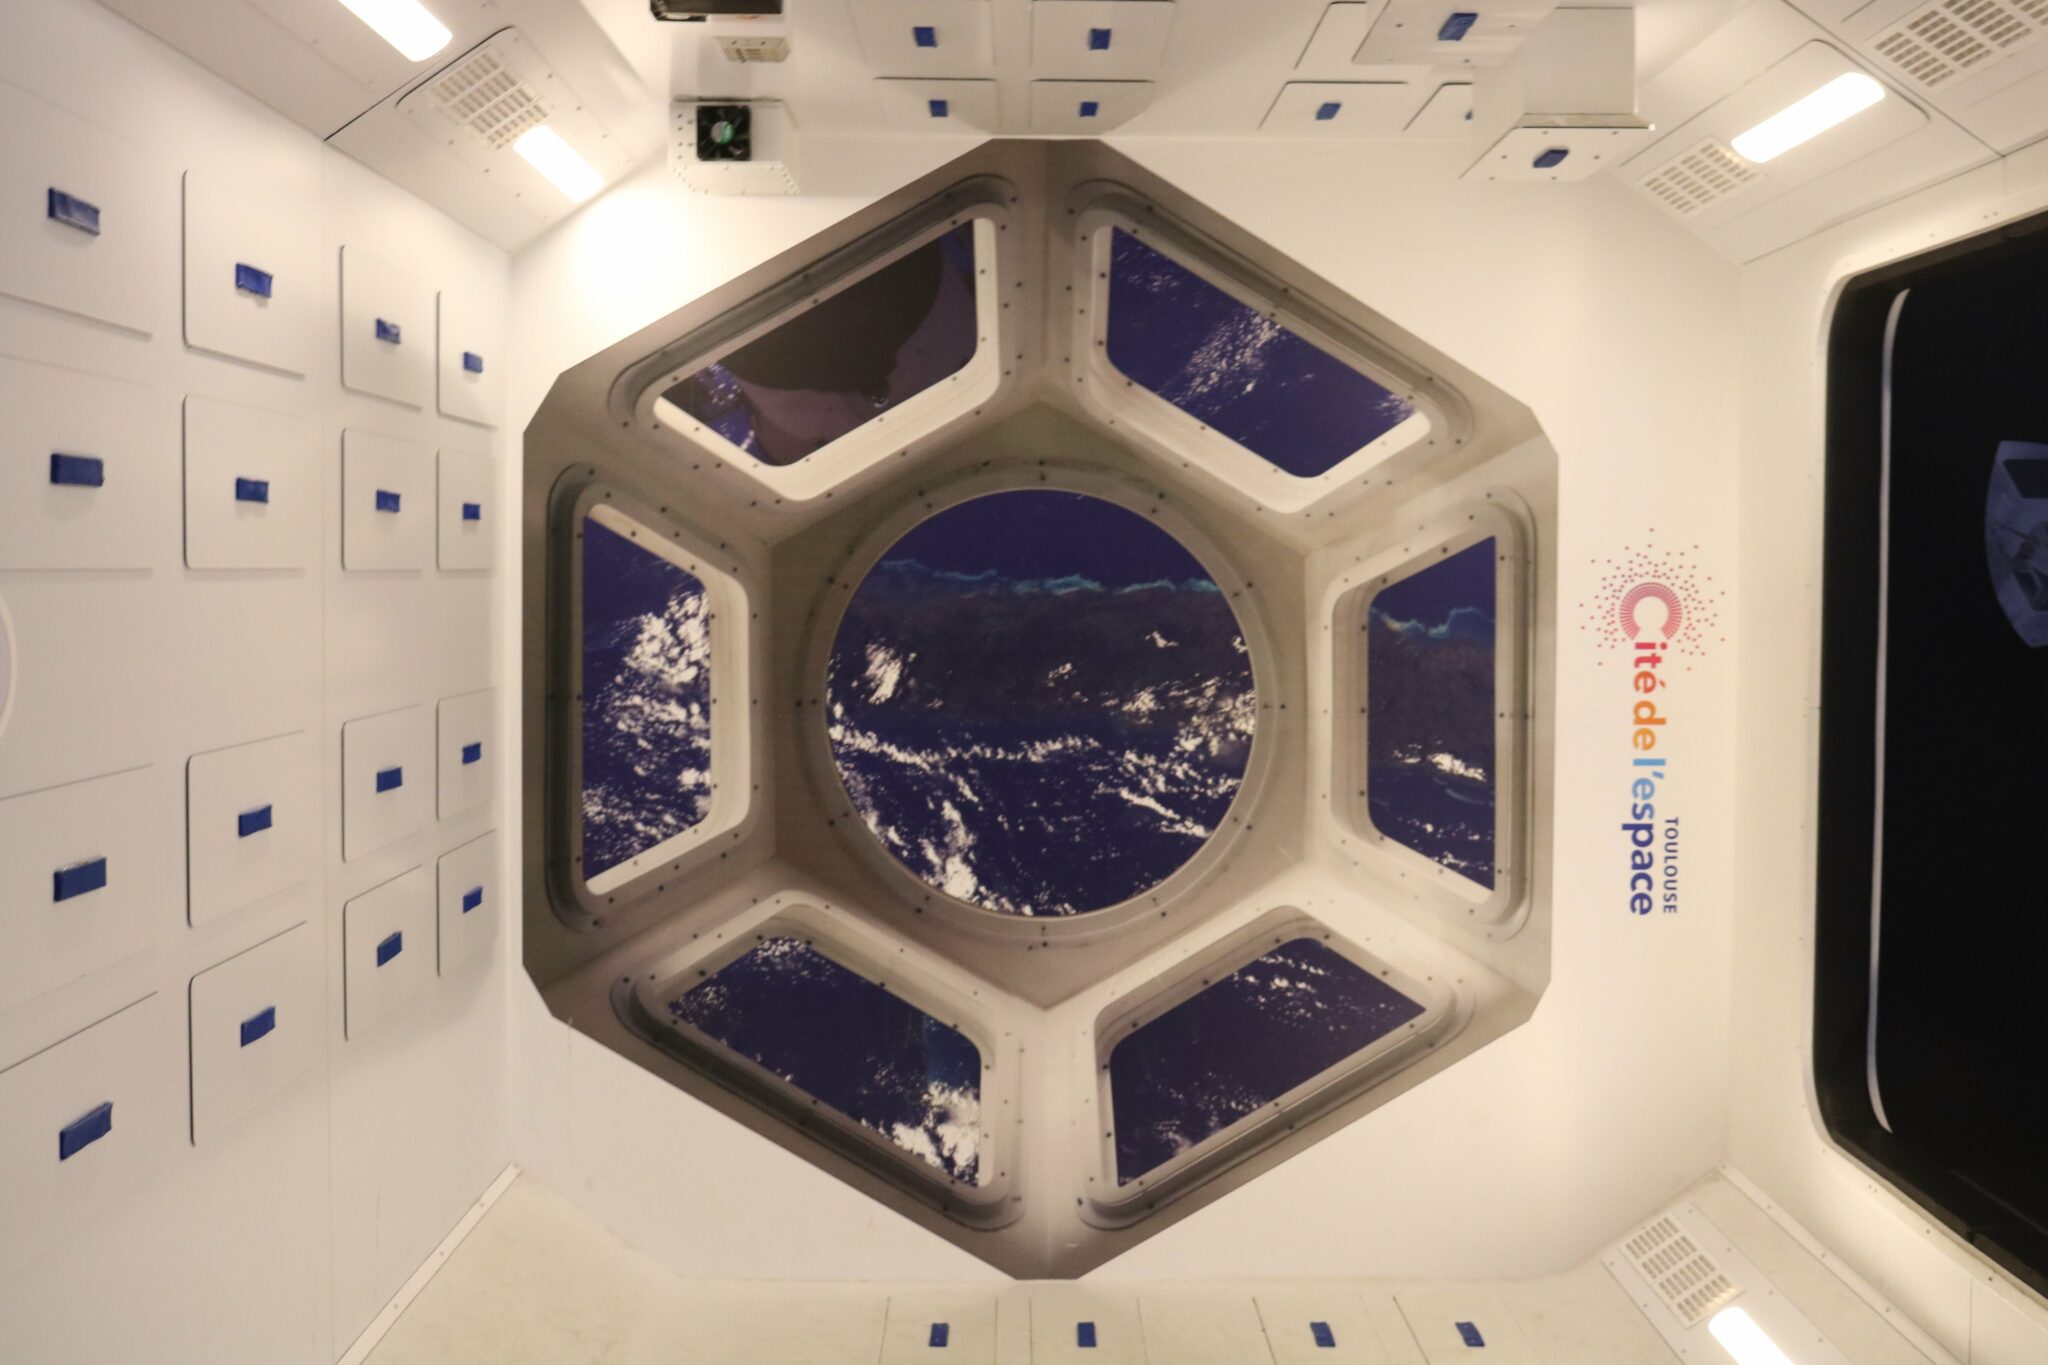 La station spatiale internationale (ISS), dont la vue depuis un de ses hublots est reproduite ici, accueille en permanence par un équipage international qui se consacre à la recherche scientifique dans l'environnement spatial. Ce laboratoire en apesanteur permet ainsi de mener des recherches essentielles à l’implantation de la vie humaine sur une autre planète.